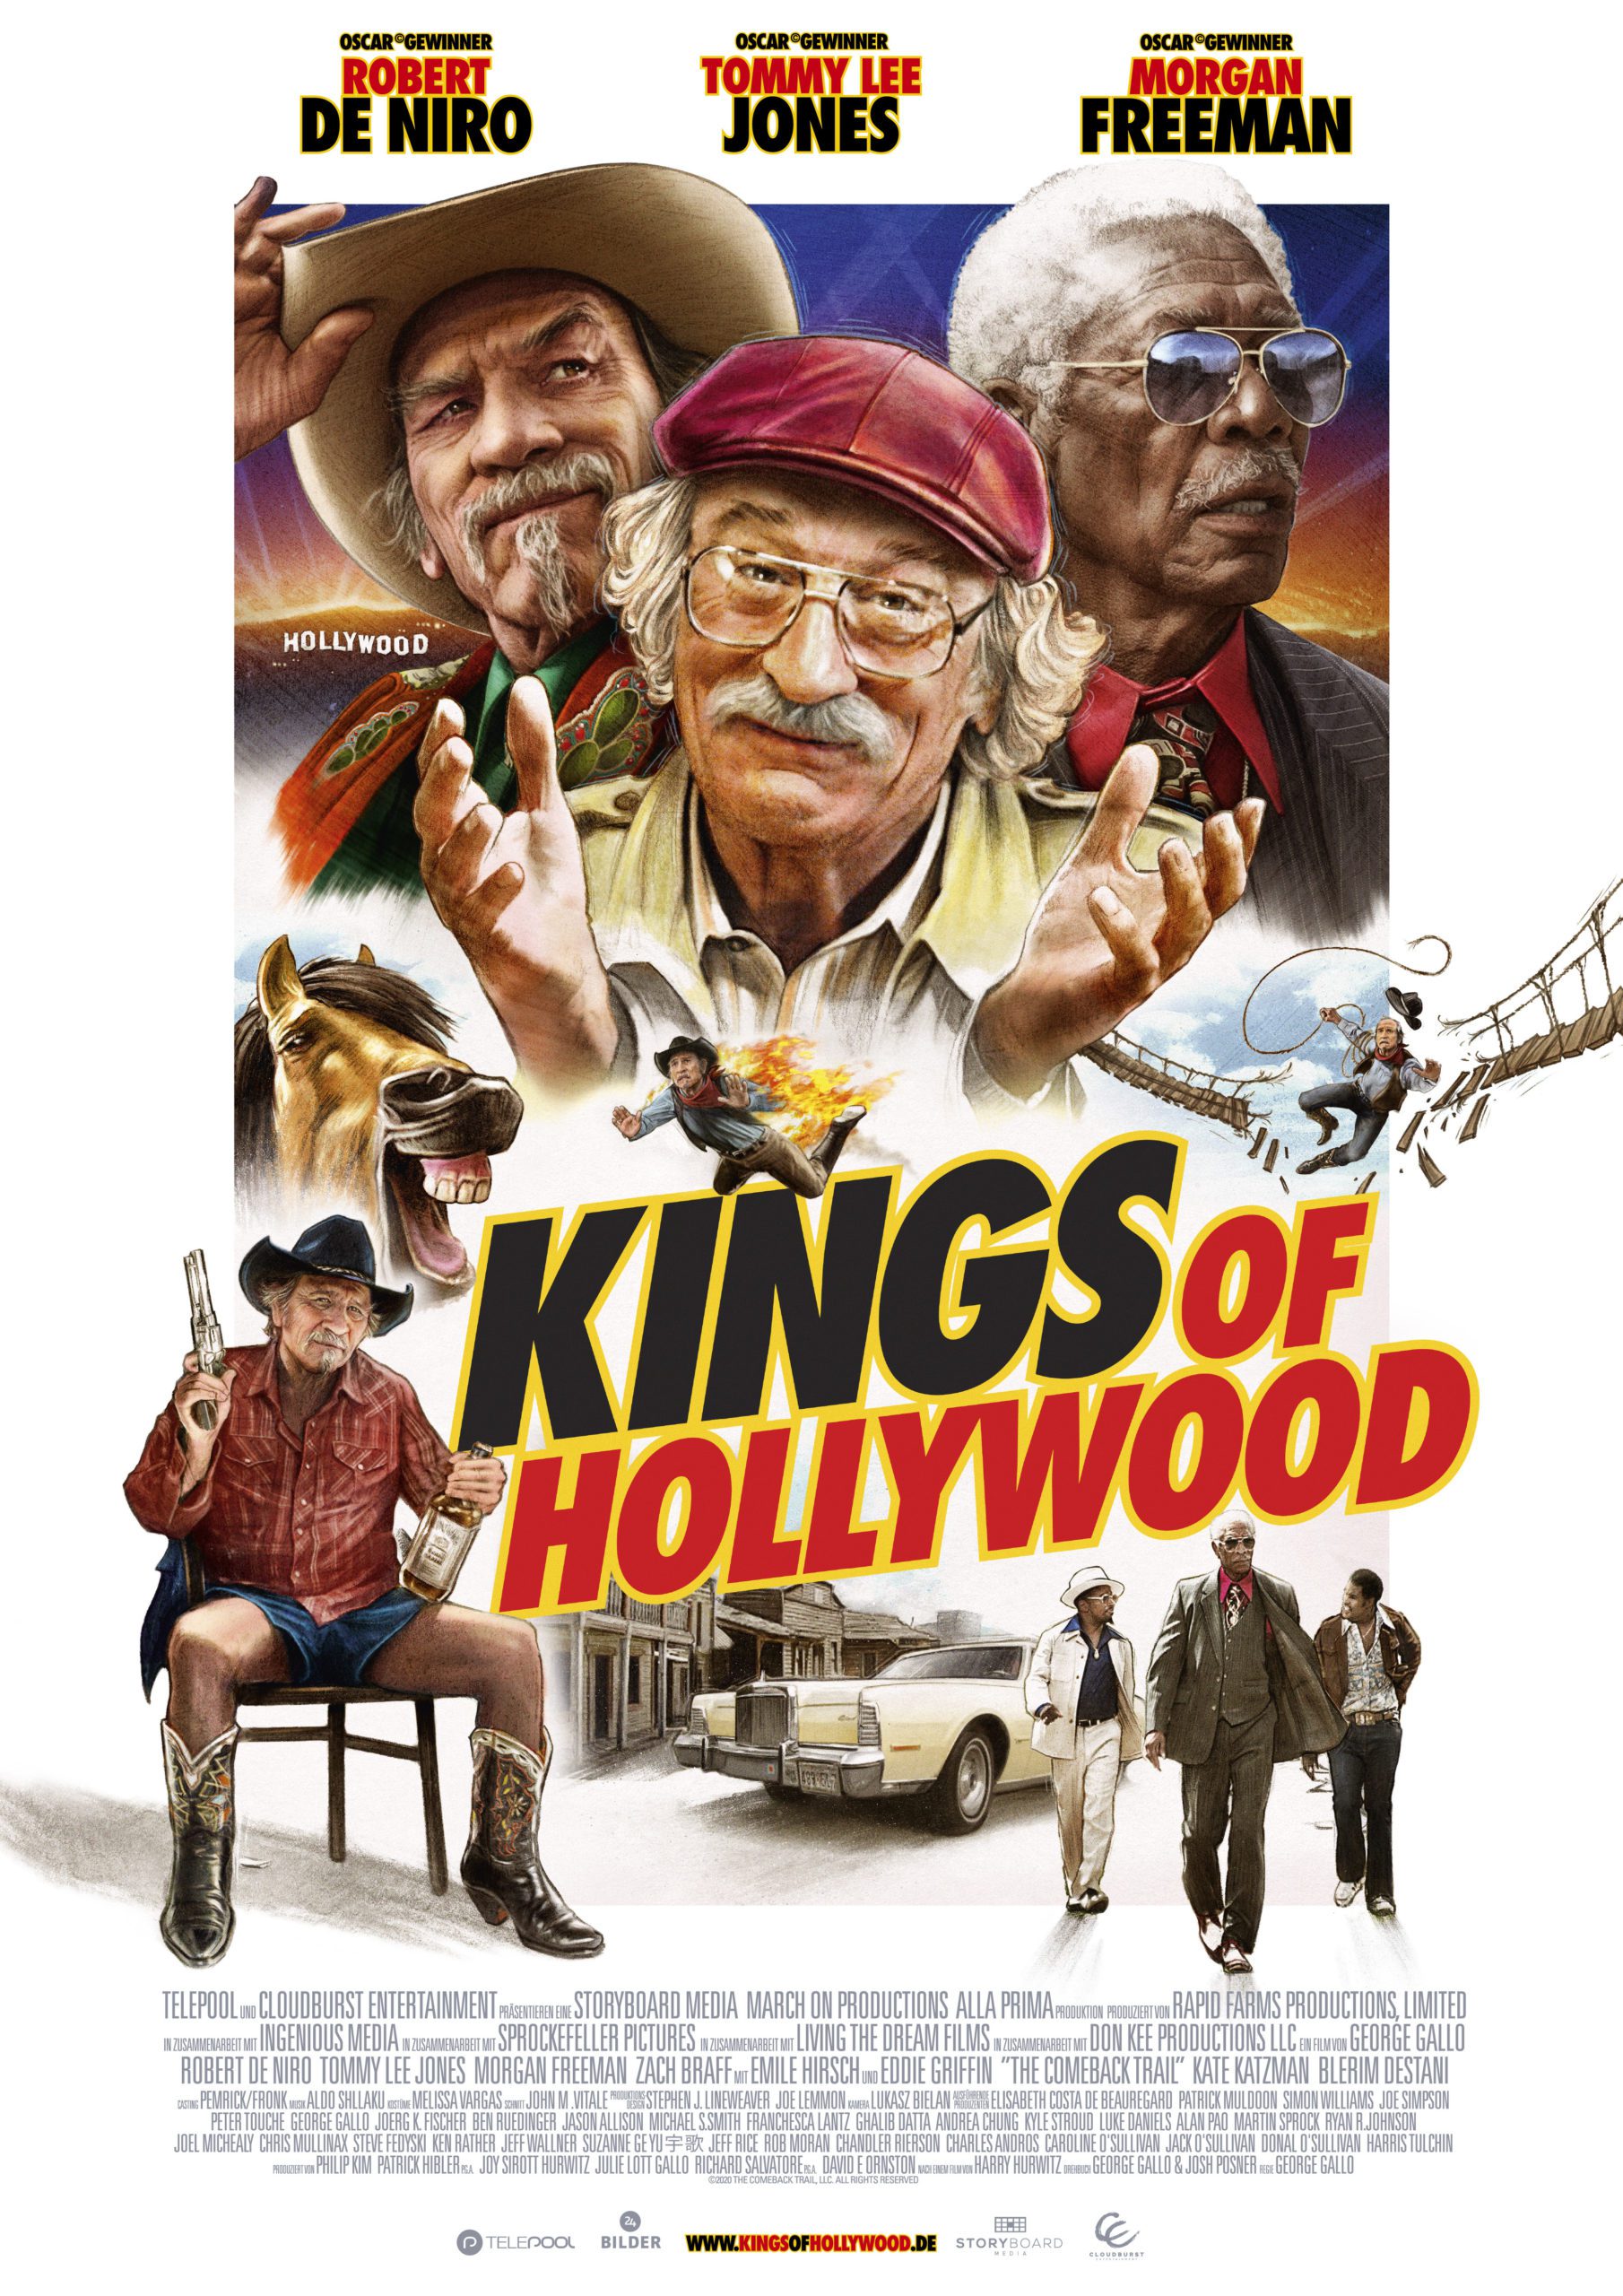 Film Kritik: "Kings of Hollywood" verlässt sich zu sehr auf seine Star Besetzung